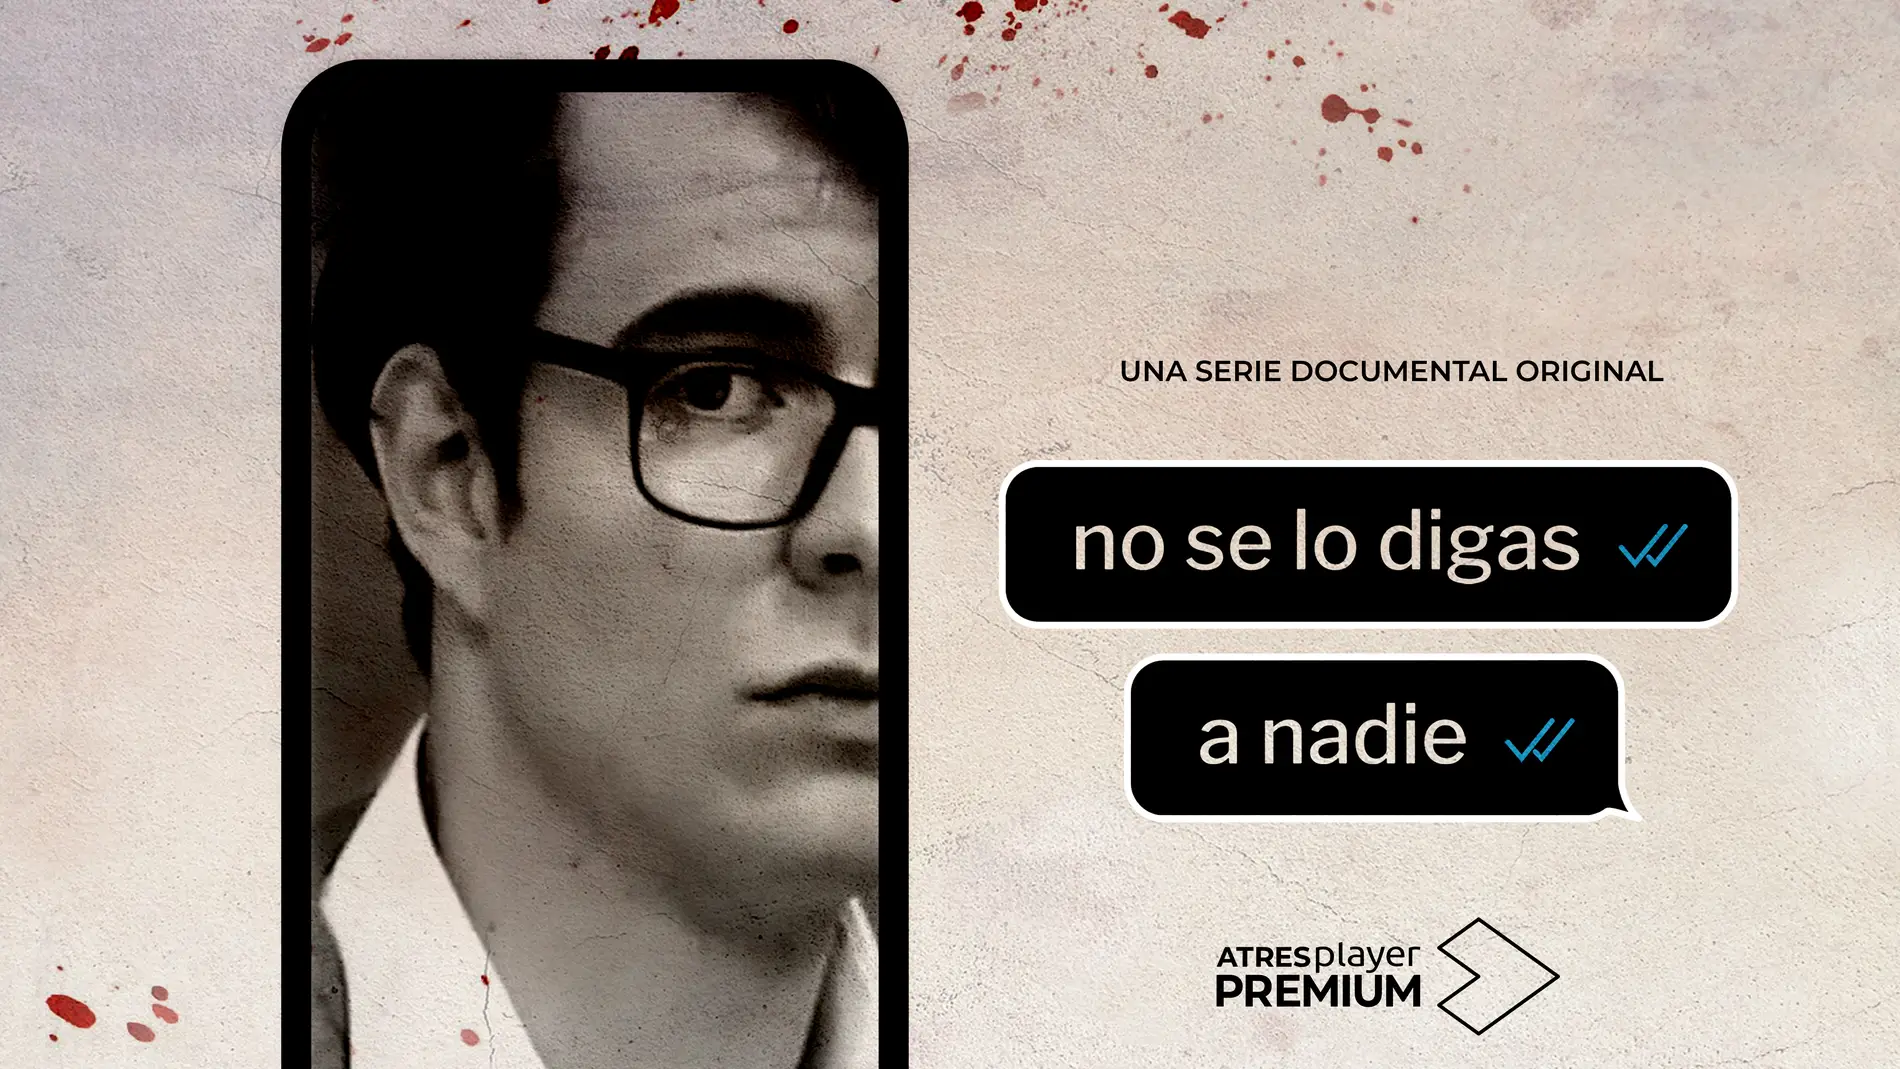 ATRESplayer PREMIUM estrena el 28 de mayo ‘No se lo digas a nadie’, serie documental original sobre el crimen de Pioz